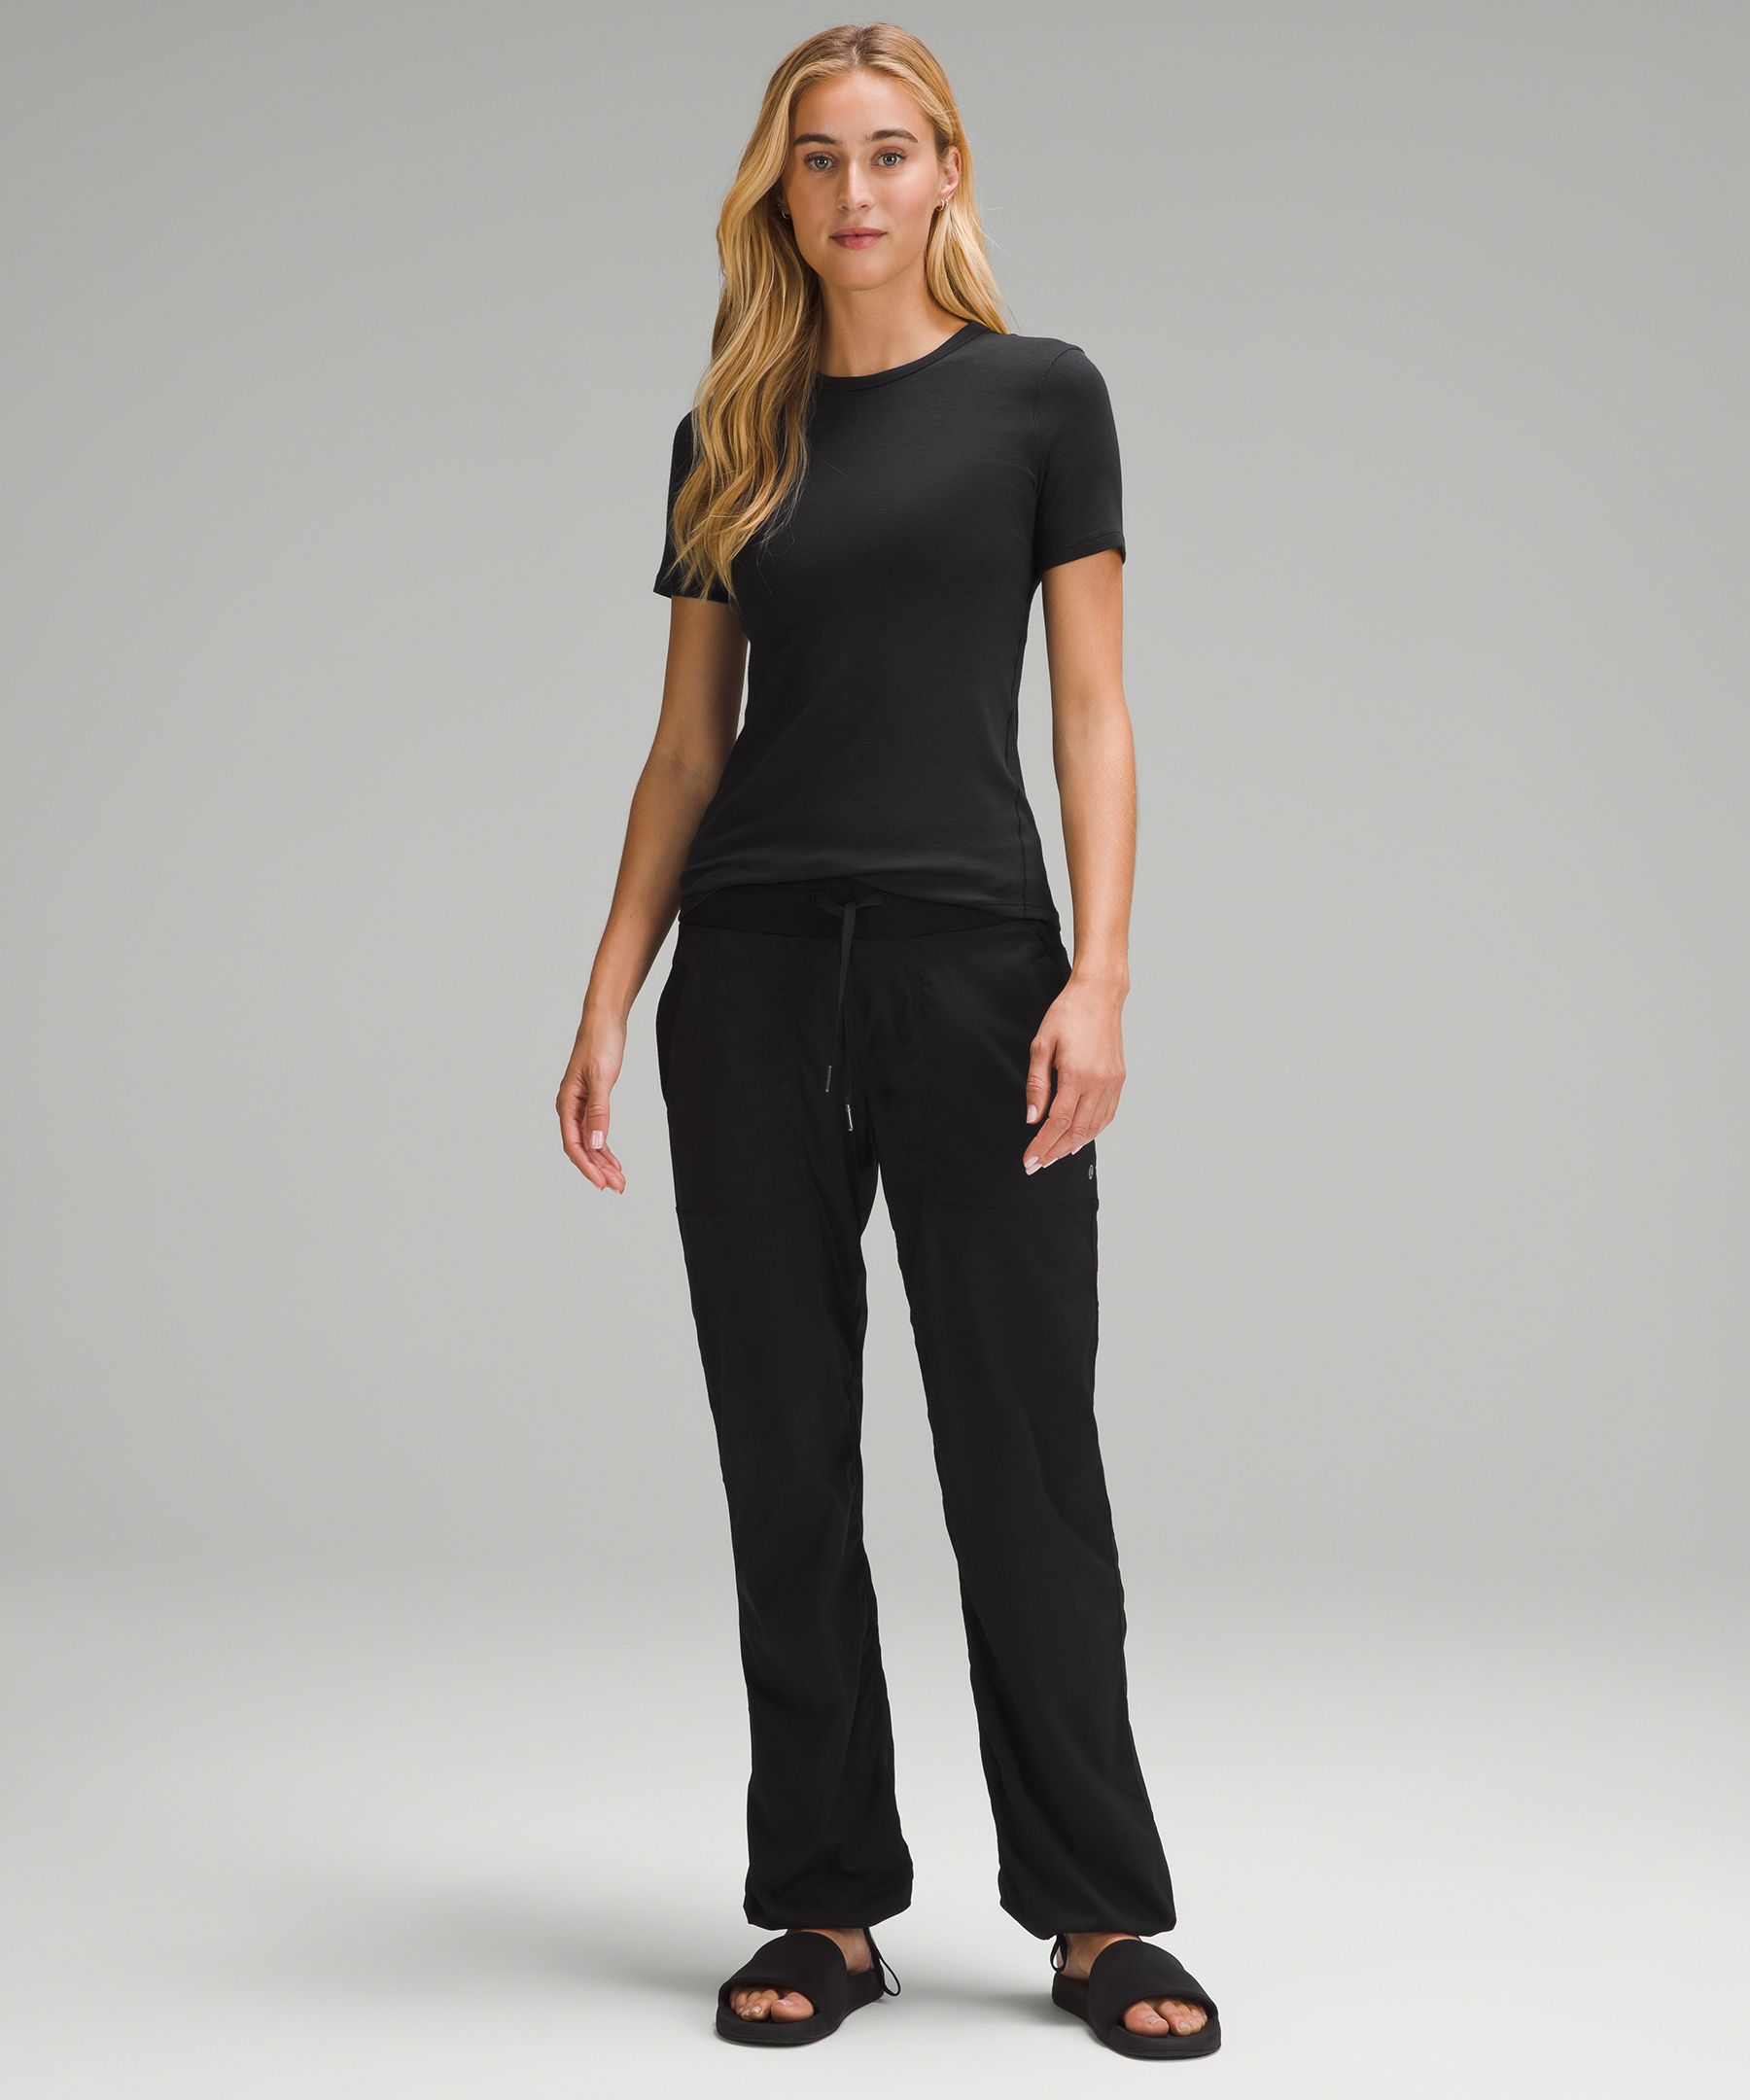 Lululemon Studio Pants II Unlined Fossill Womens 4 Gray Sportswear  Activewear - $75 - From Jillian